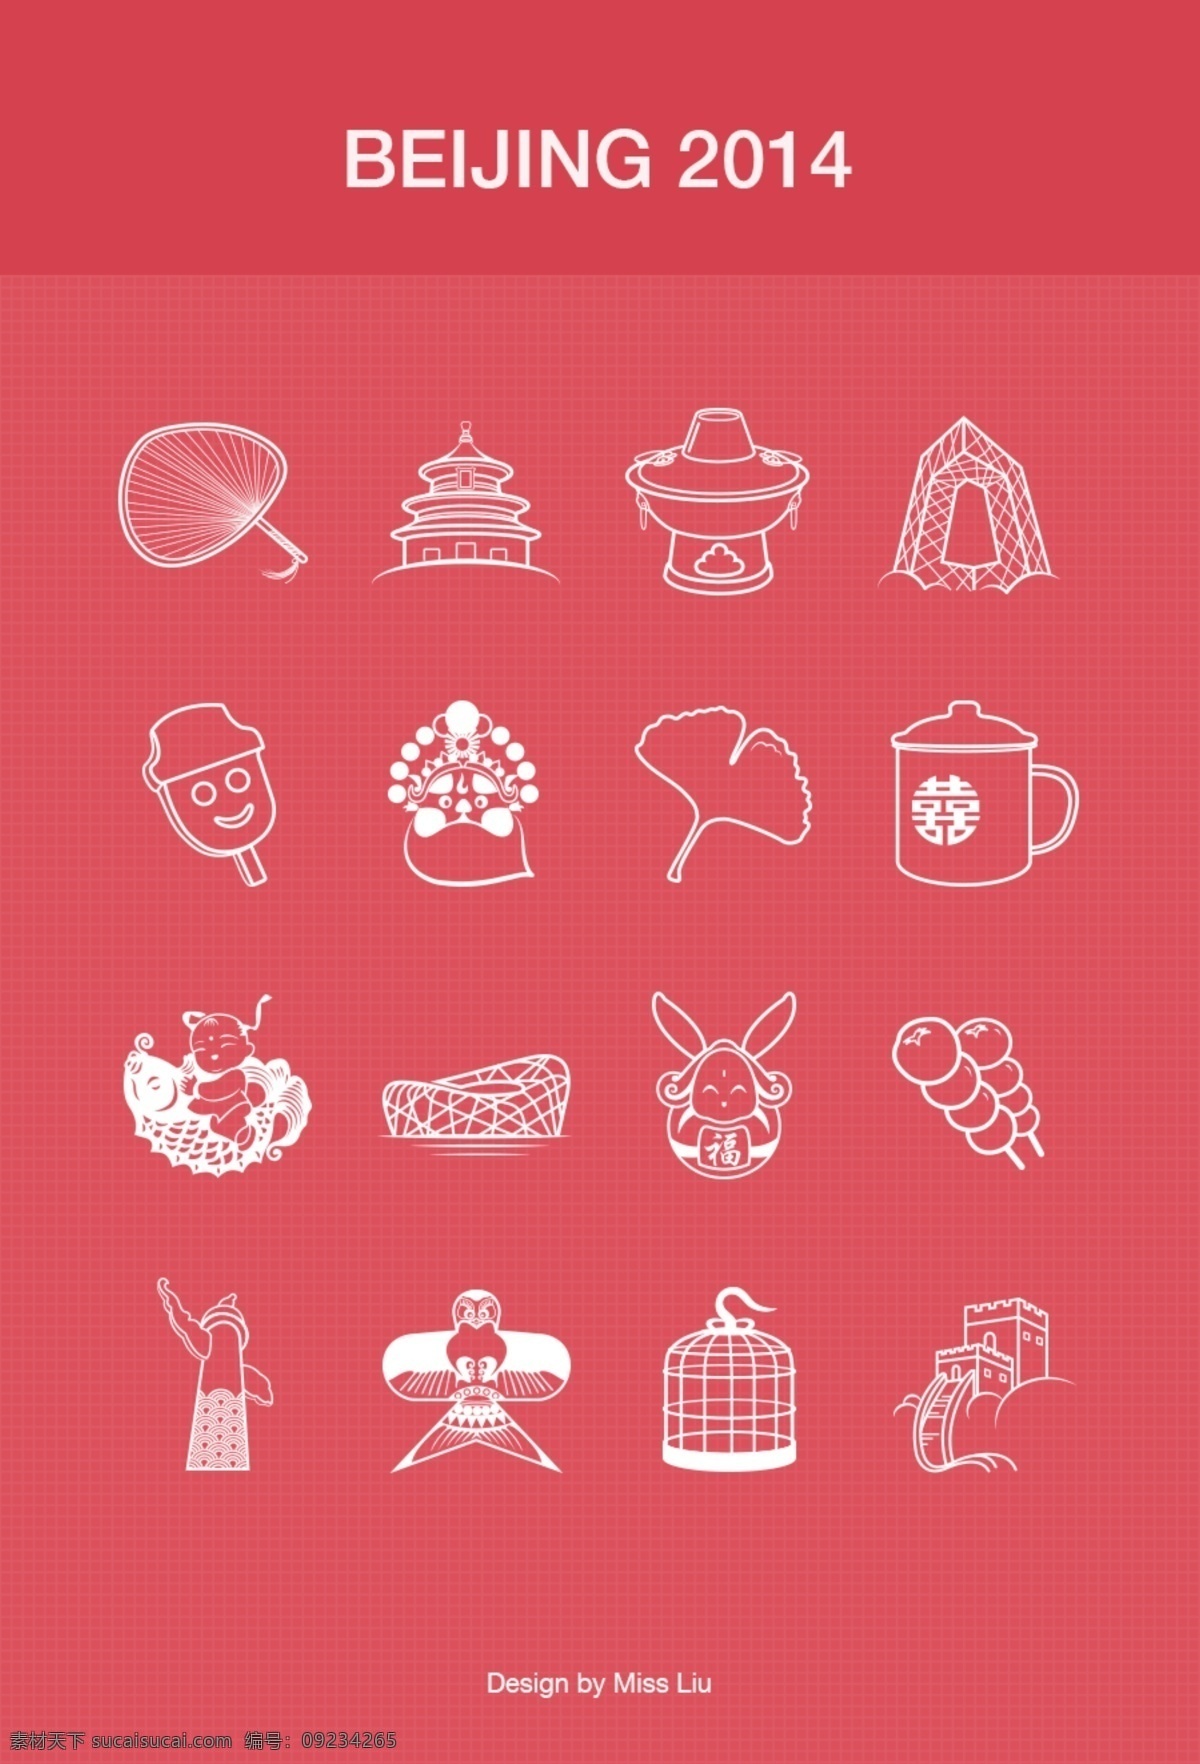 中国 元素 简约 图形设计 杯子 风筝 鸟笼 扇子 中国元素 手机 app app图标